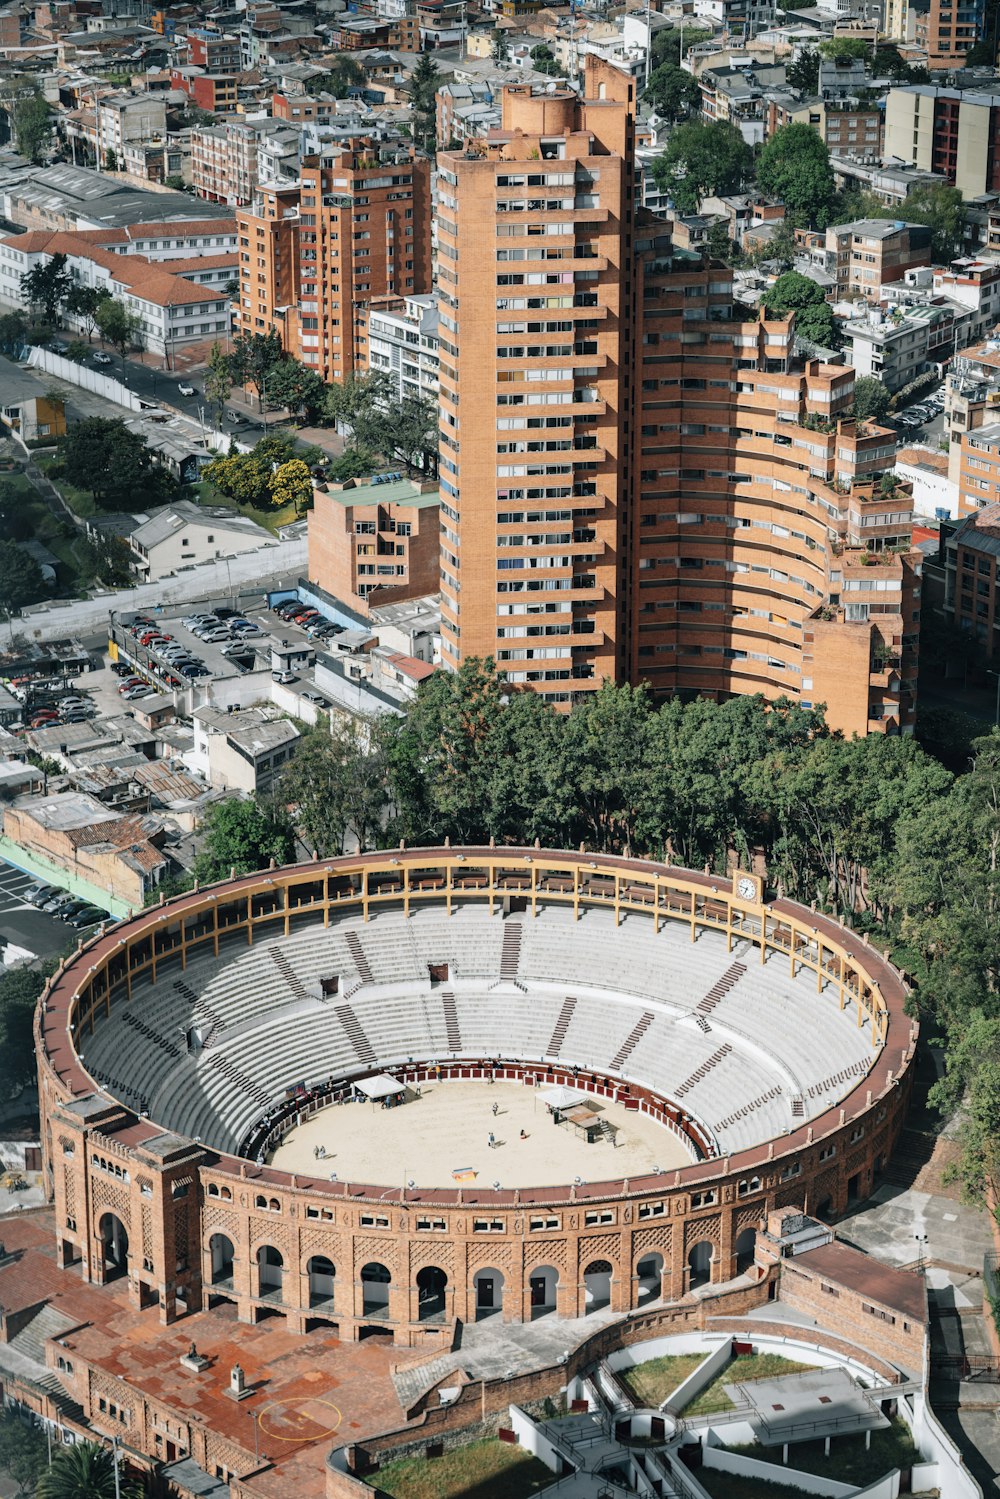 Fotografía aérea del estadio